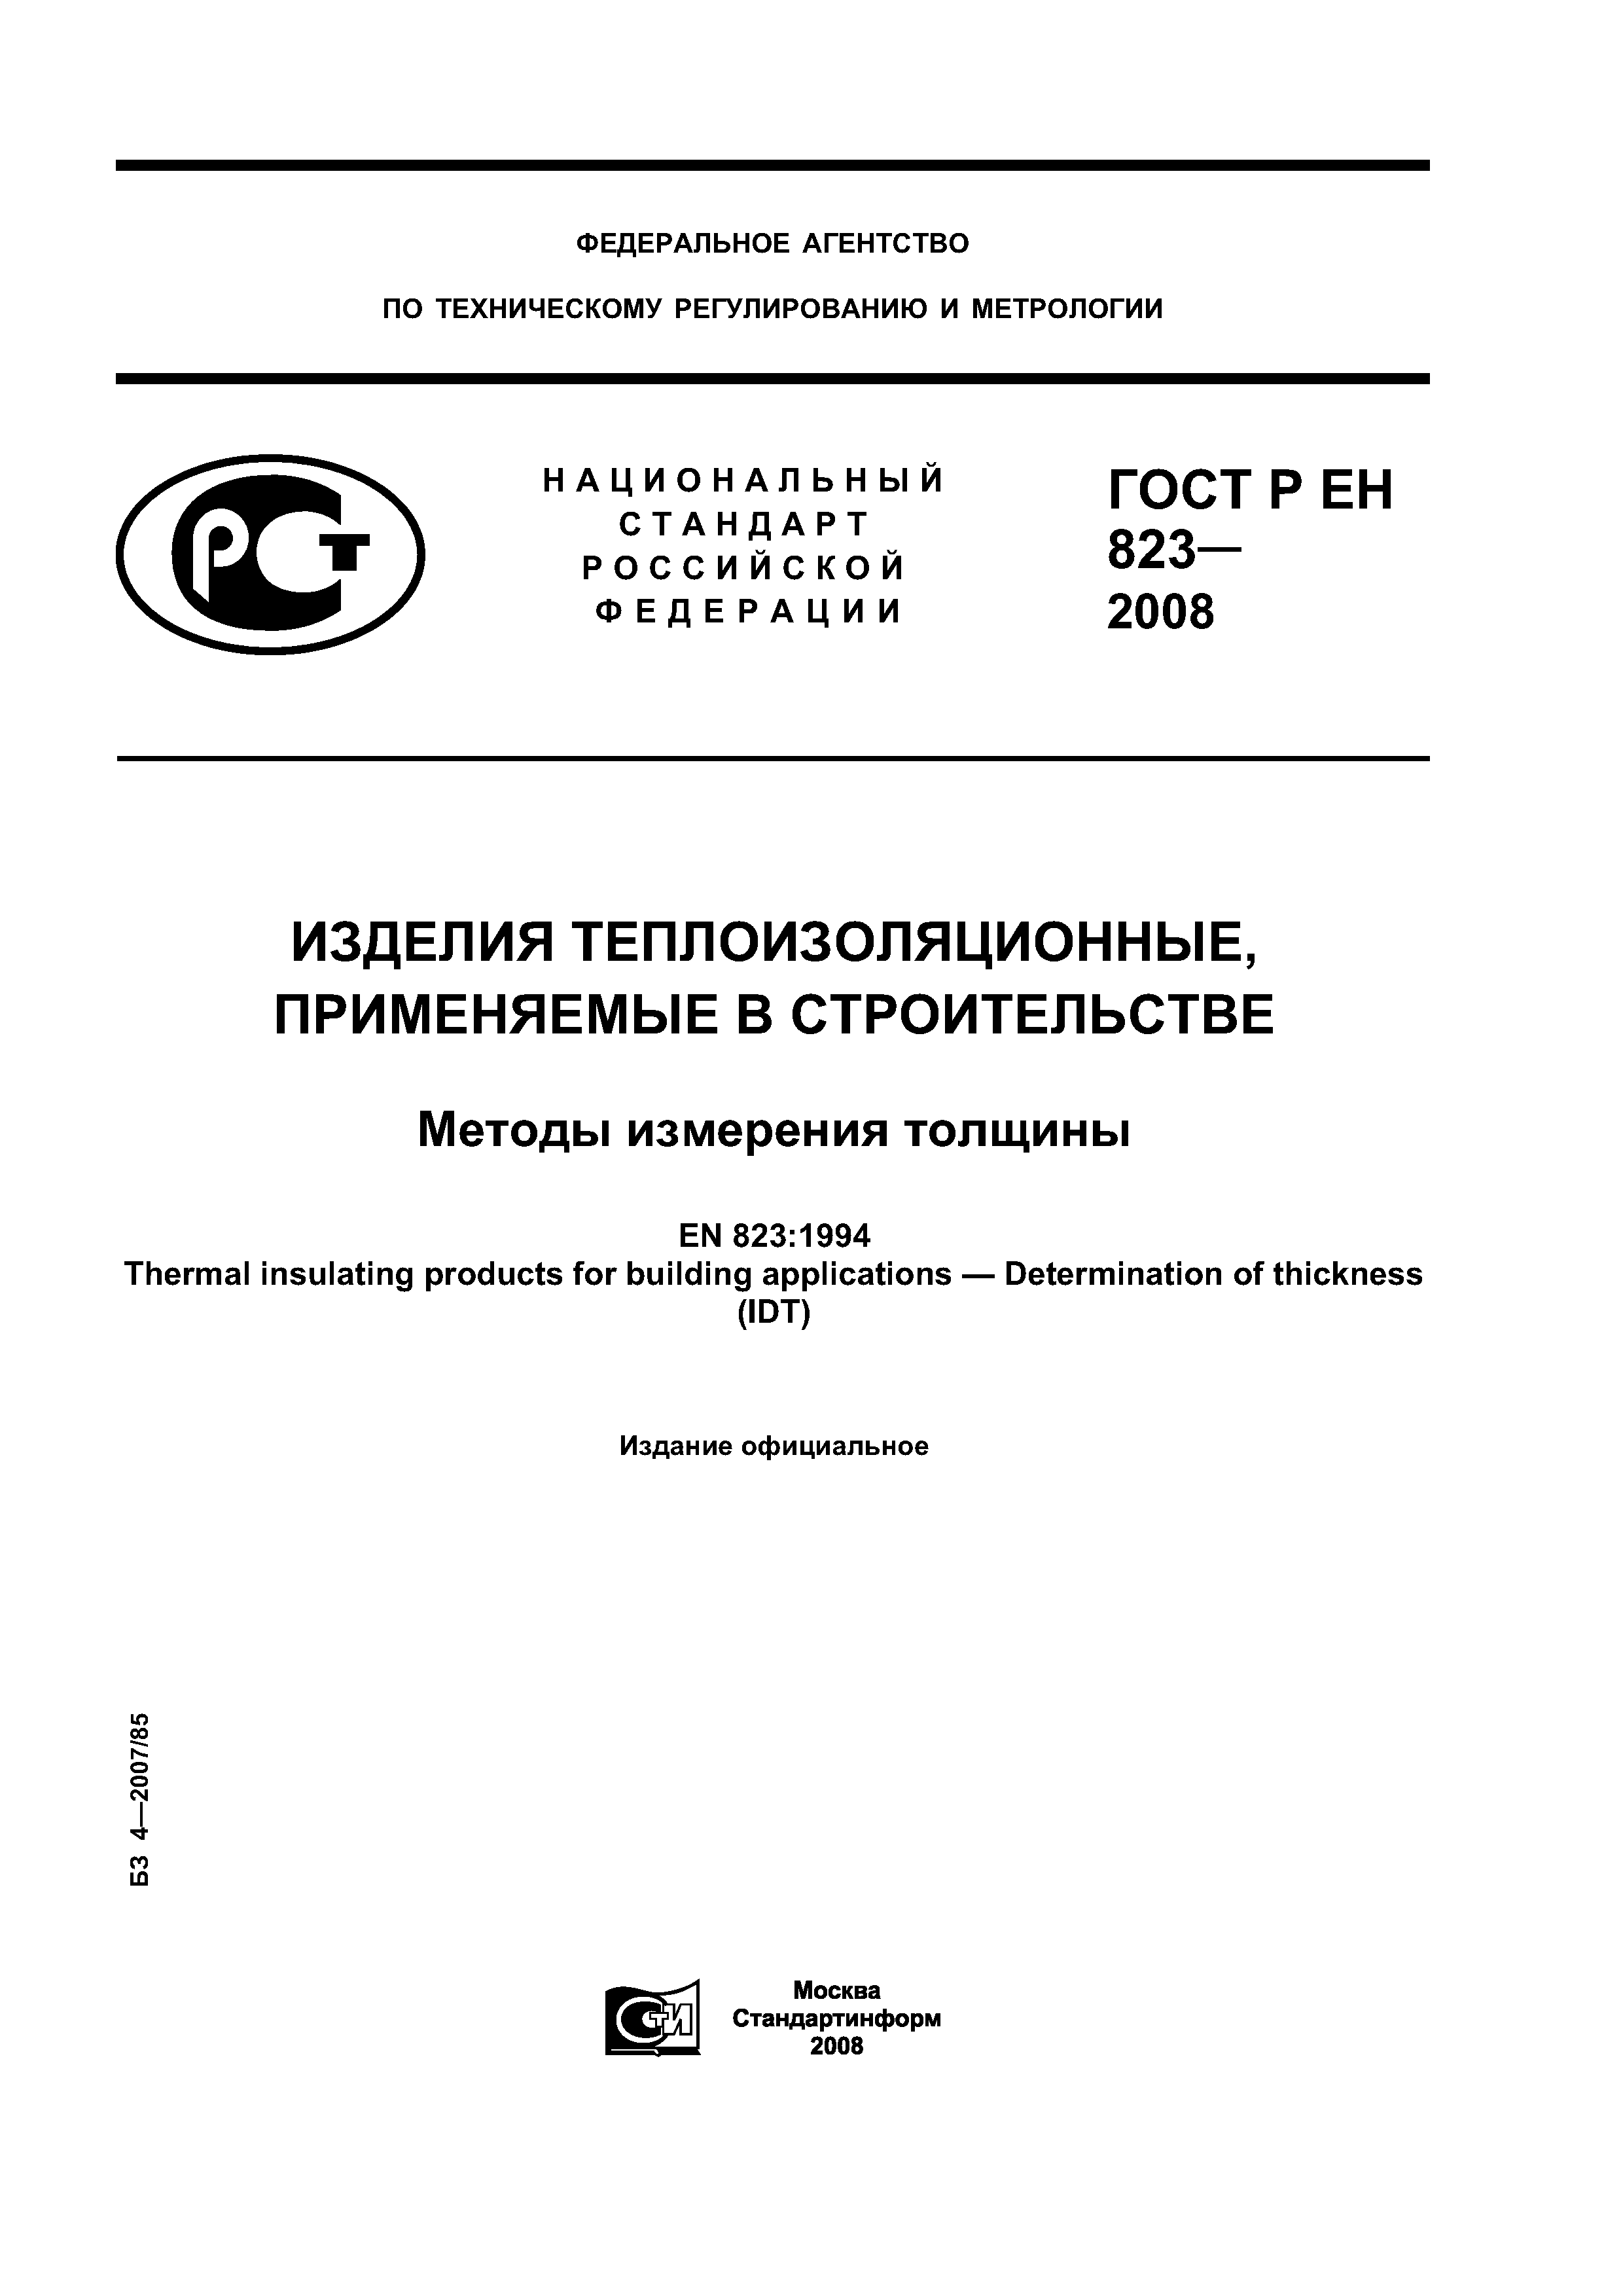 ГОСТ Р ЕН 823-2008